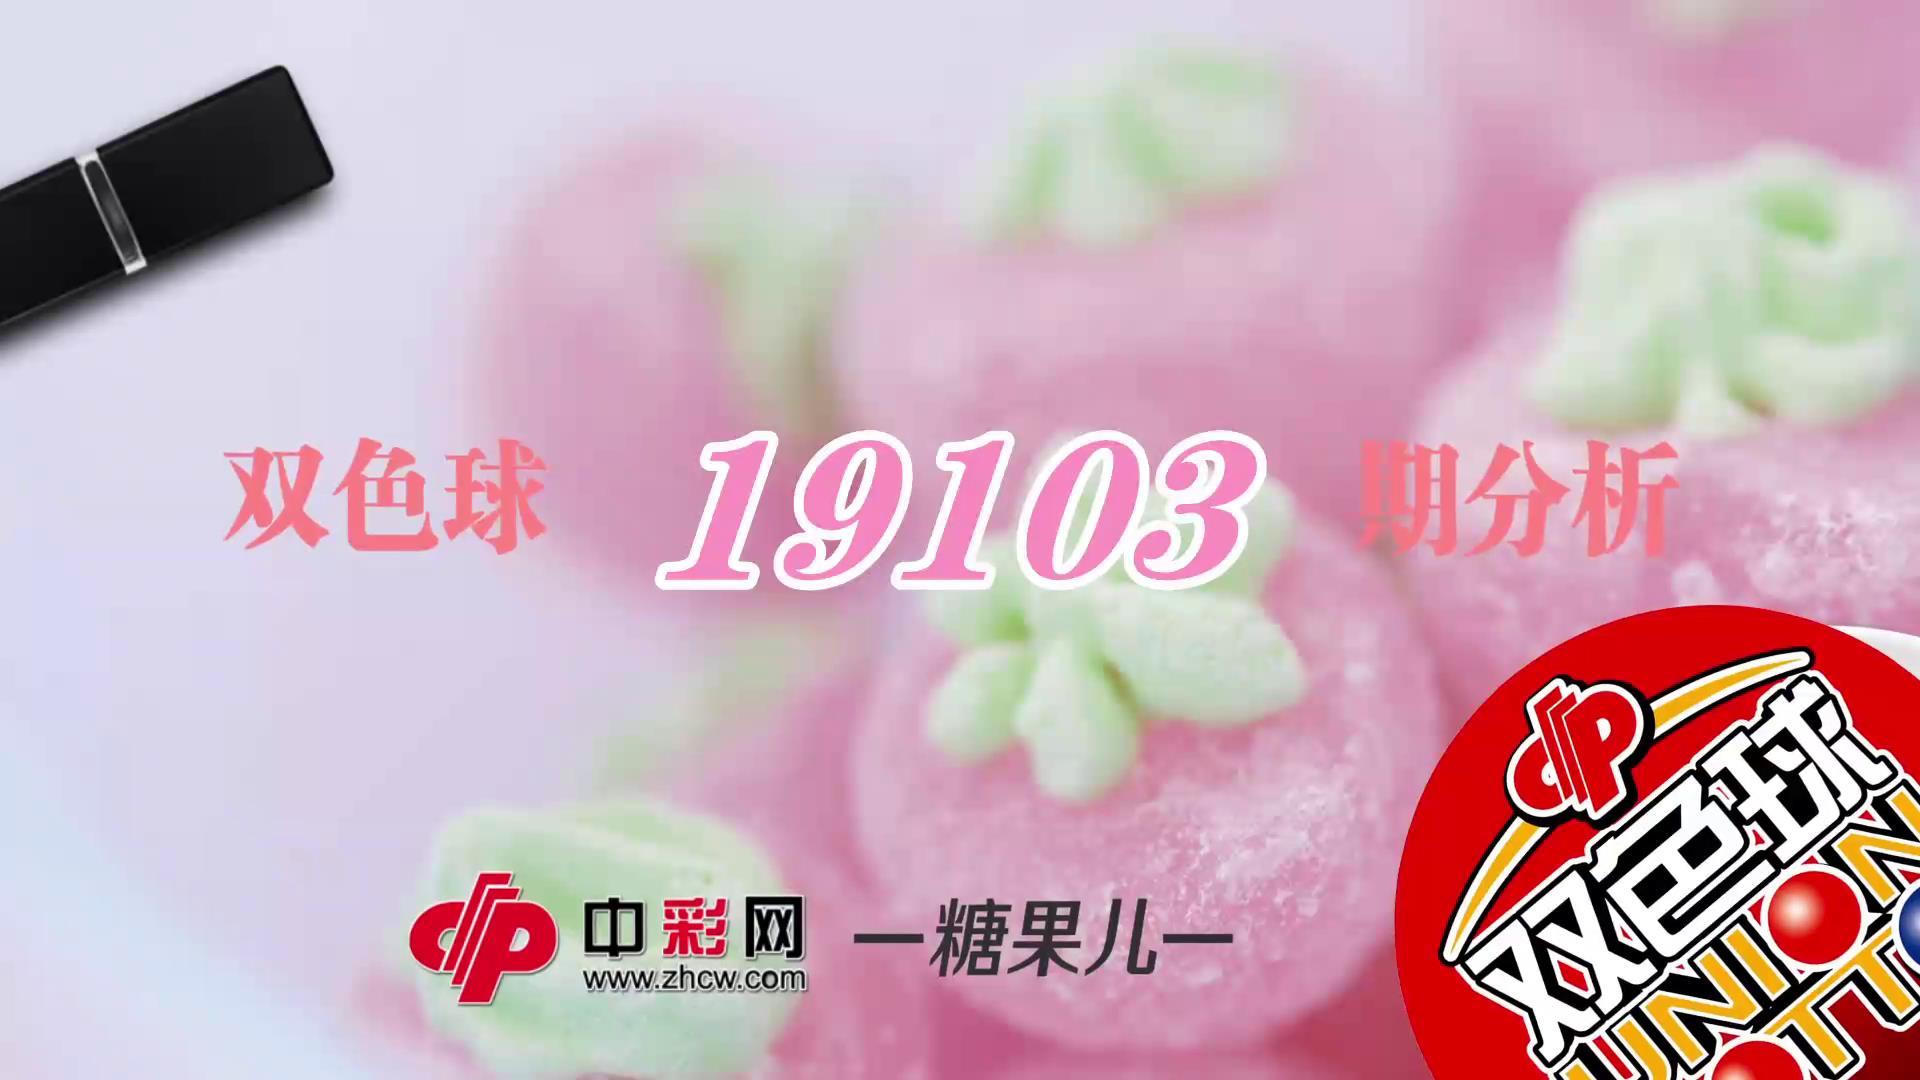 【中彩视频】糖果儿双色球第19103期